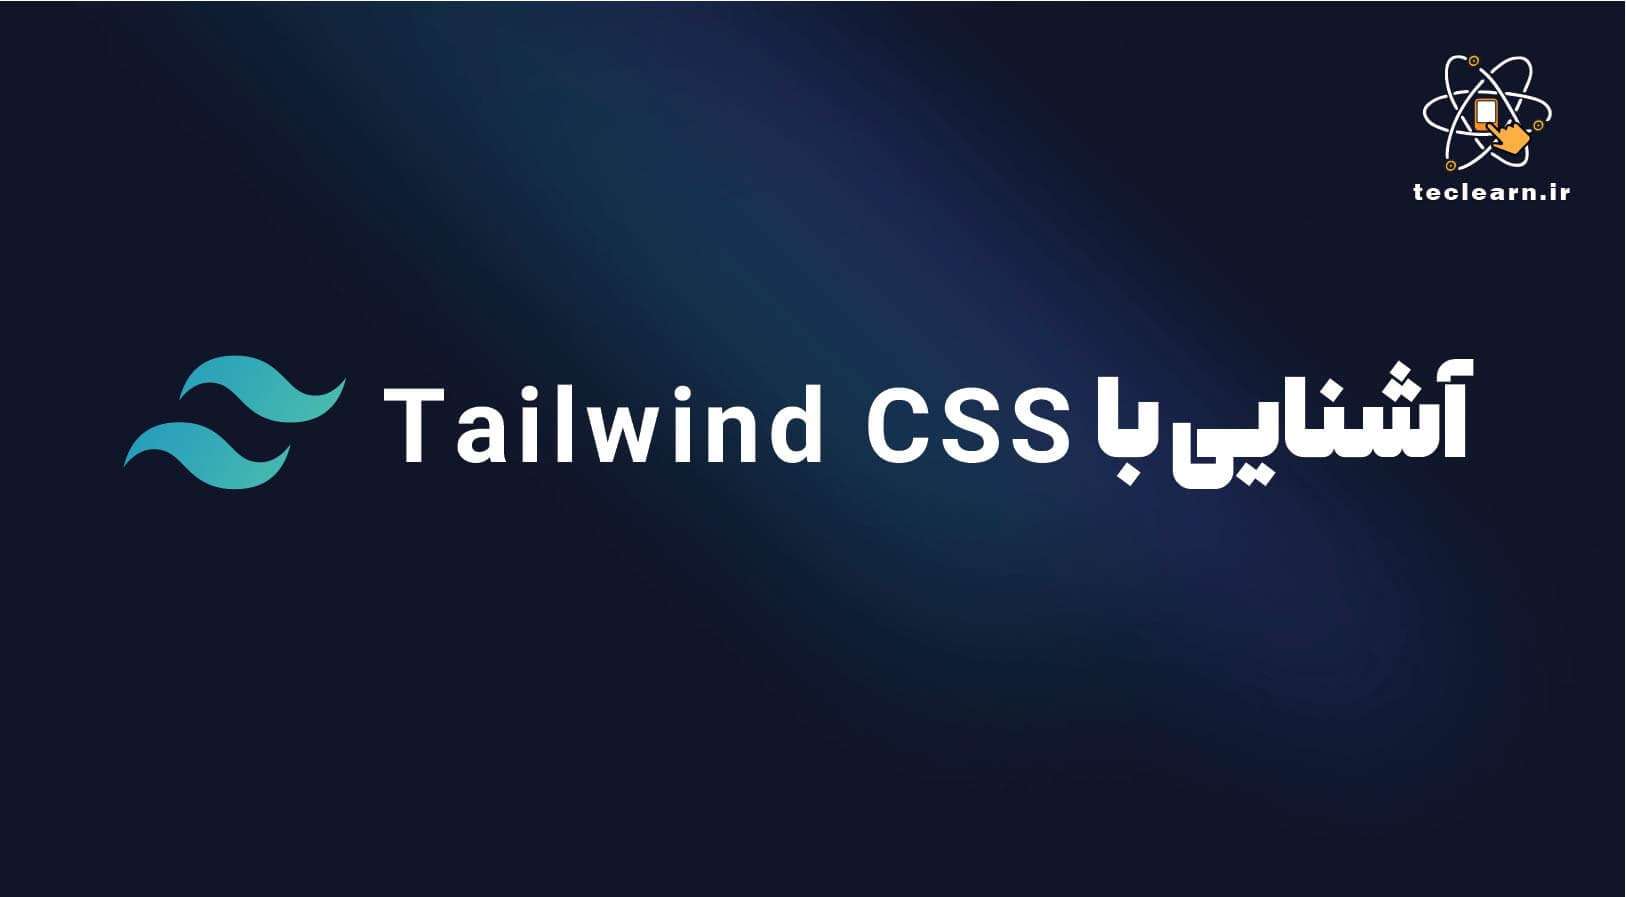 هر آنچه که باید درباره Tailwind CSS بدانید!